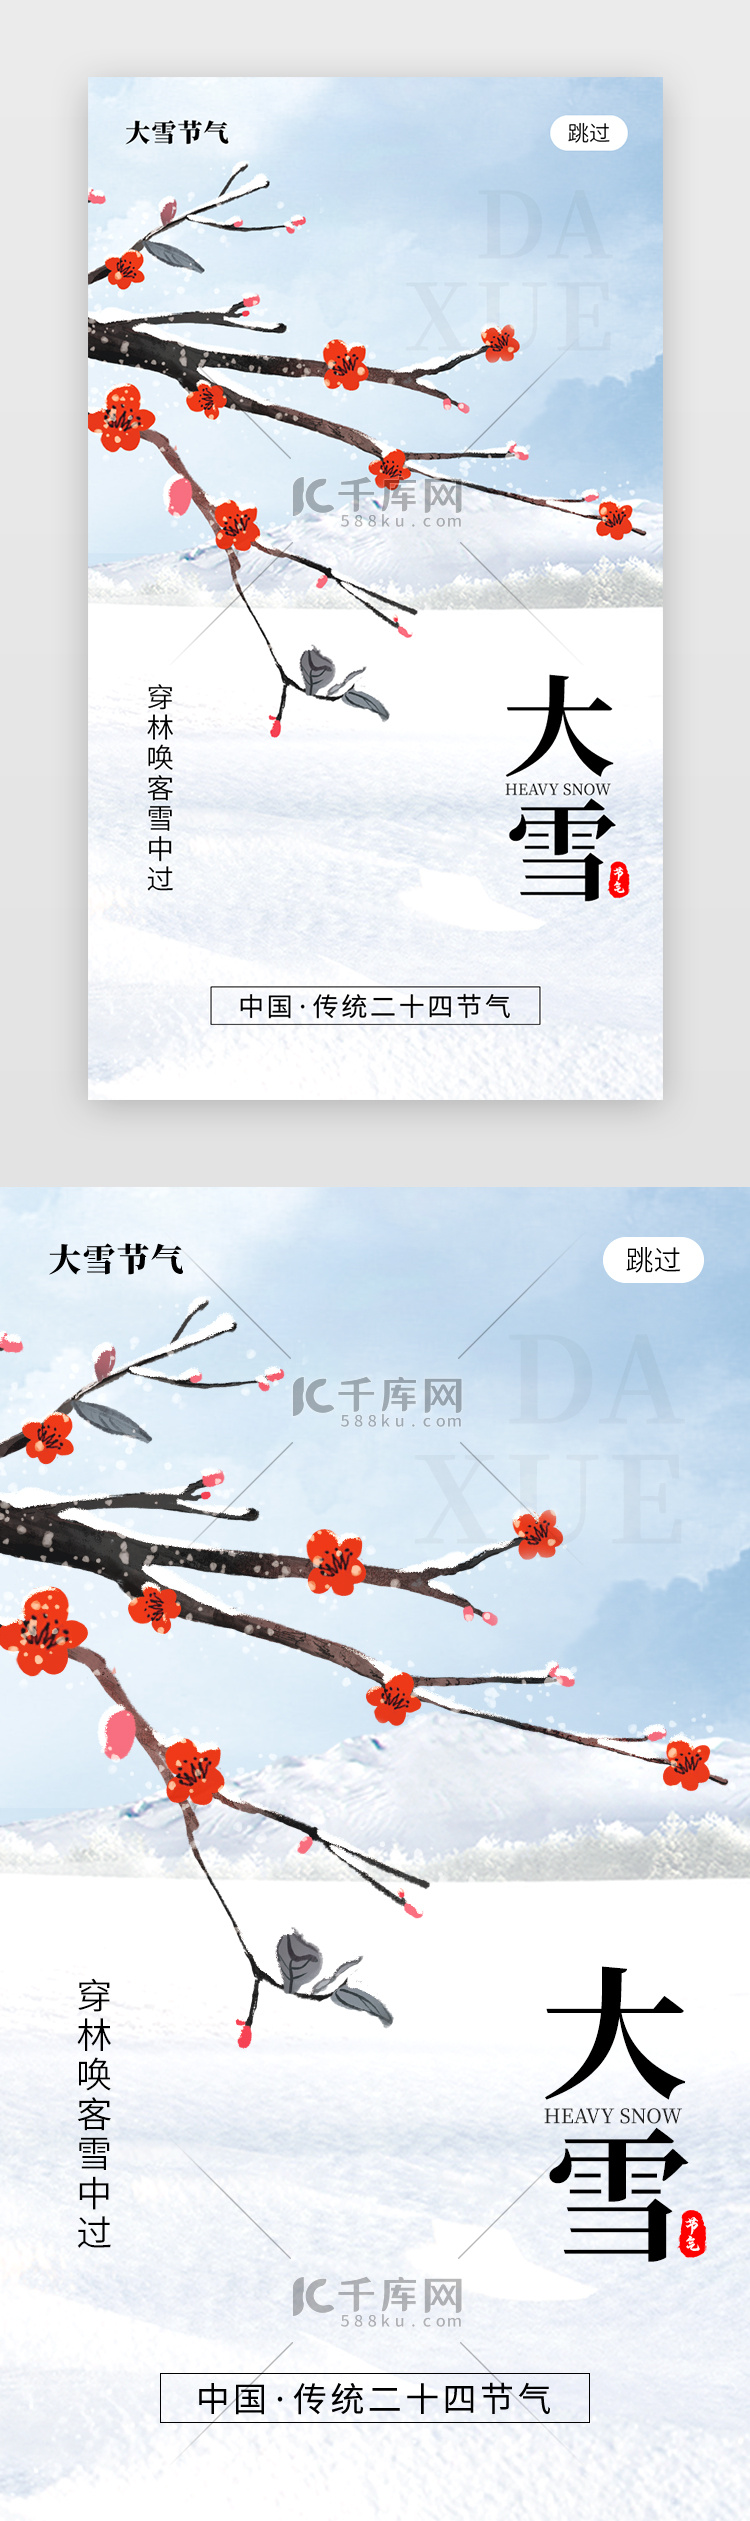 二十四节气大雪app闪屏创意蓝白色梅花